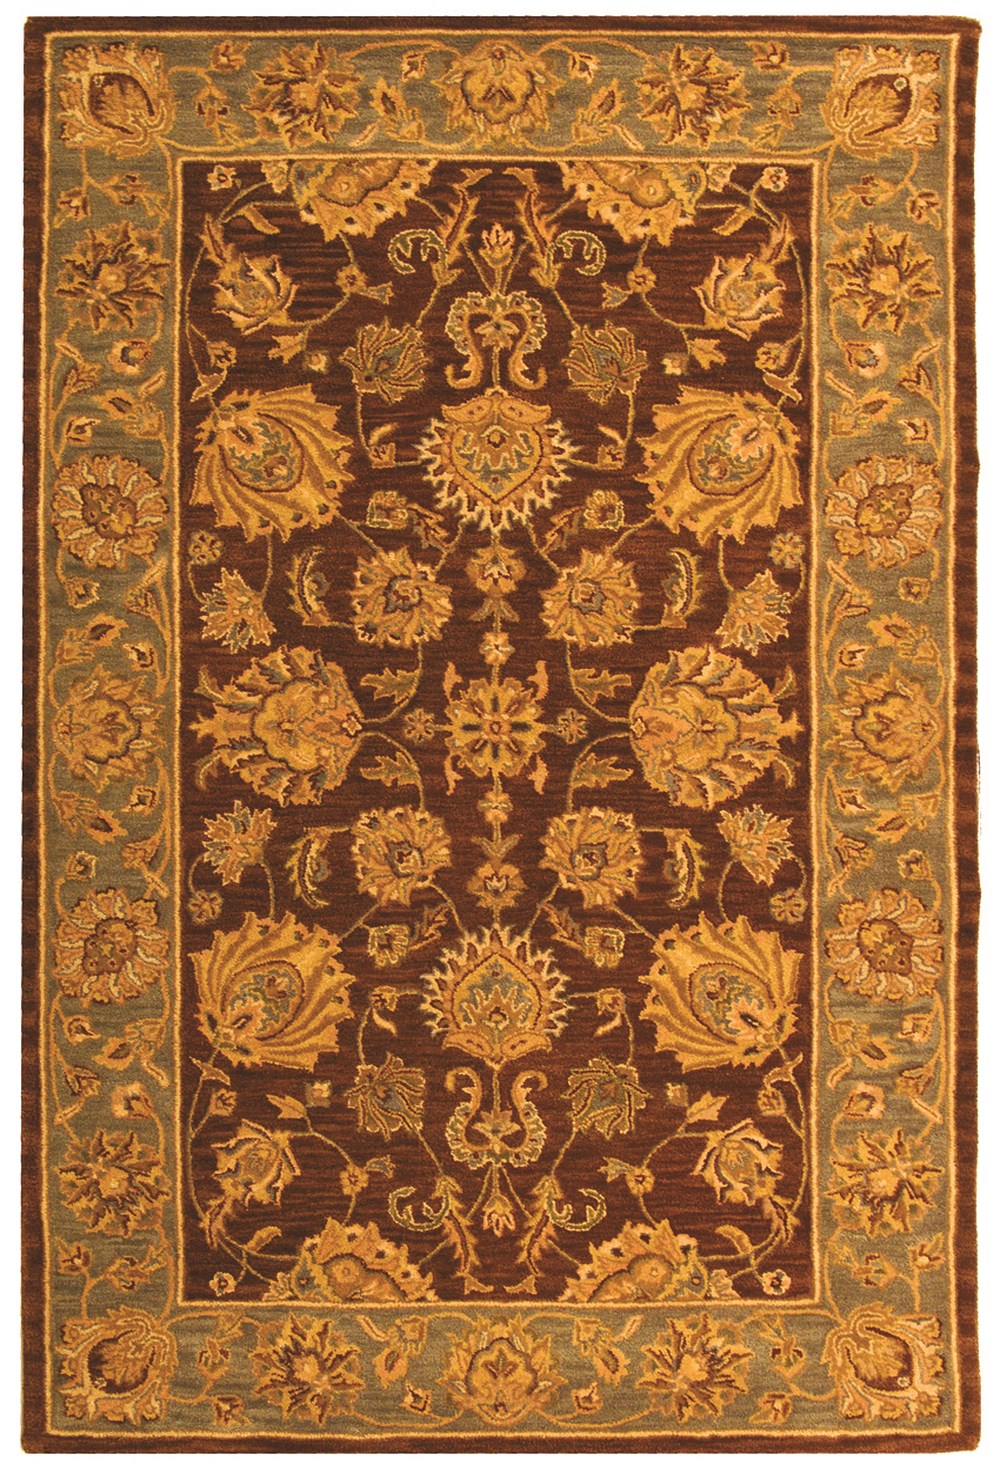 SAFAVIEH Heritage Regis Traditional Wool Area Rug, Brown/Blue, 5' x 8' - image 1 of 4